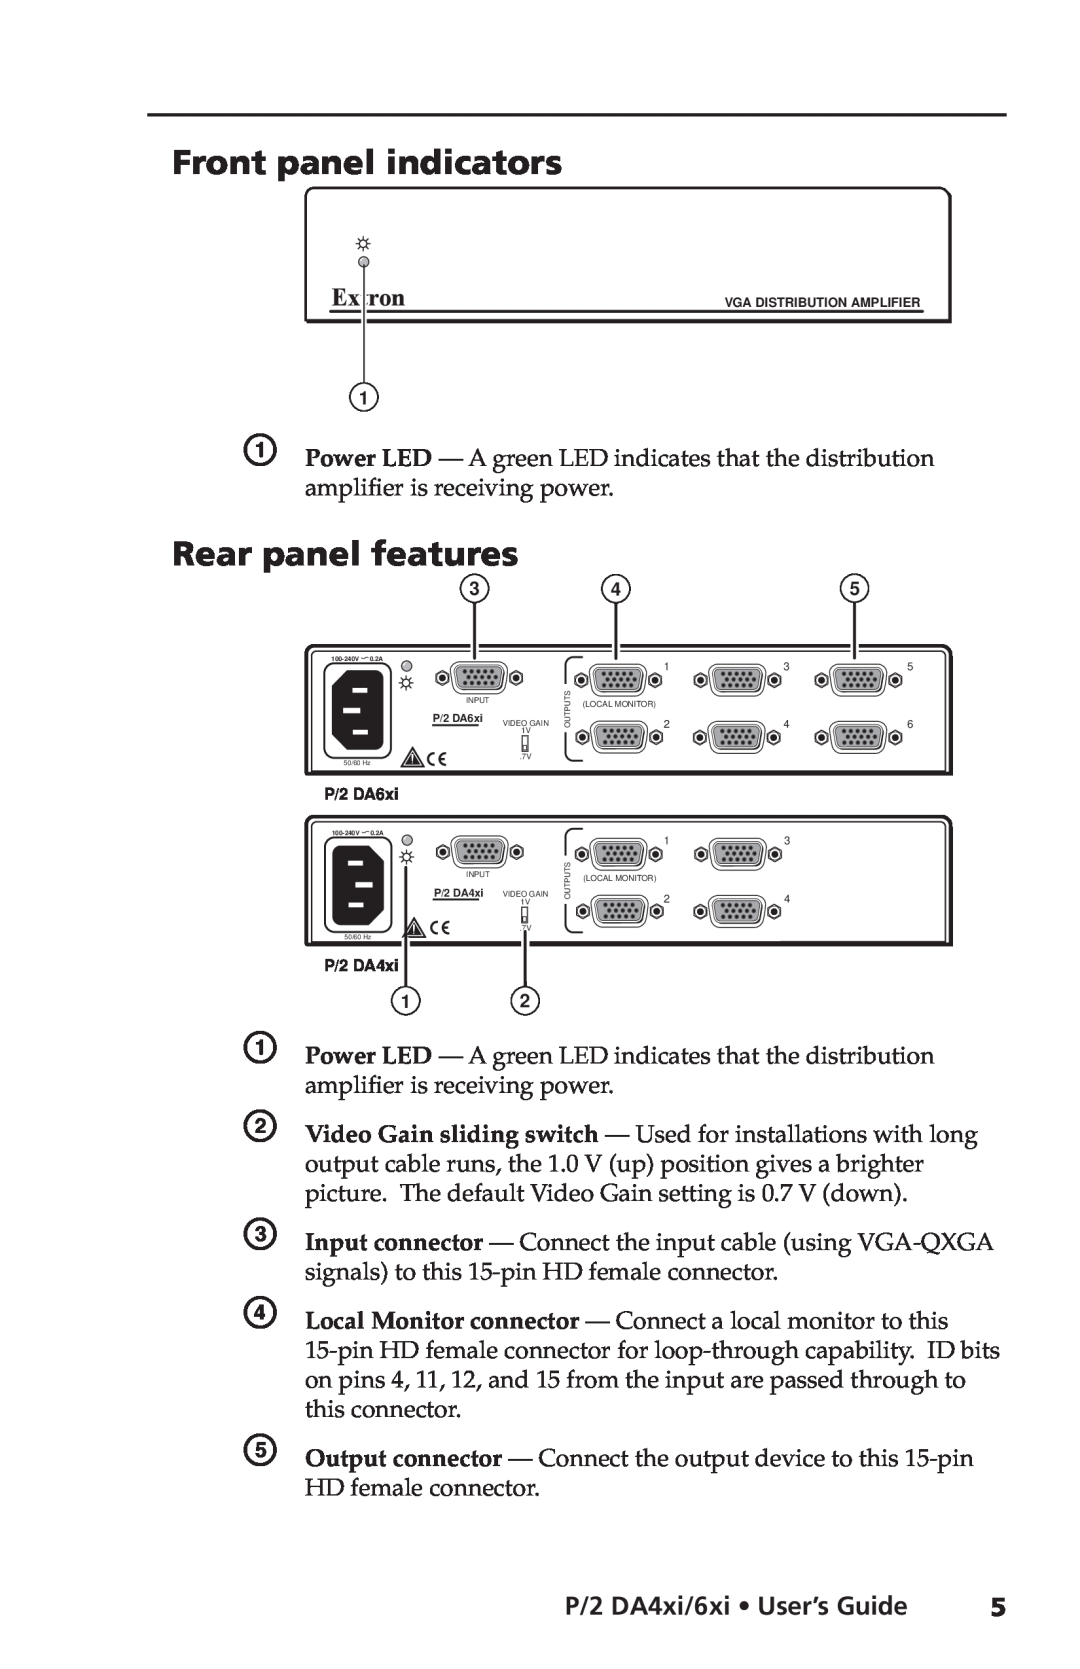 Extron electronic P/2 DA6XI Front panel indicators, Rear panel features, P/2 DA4xi/6xi User’s Guide, P/2 DA6xi, Outputs 